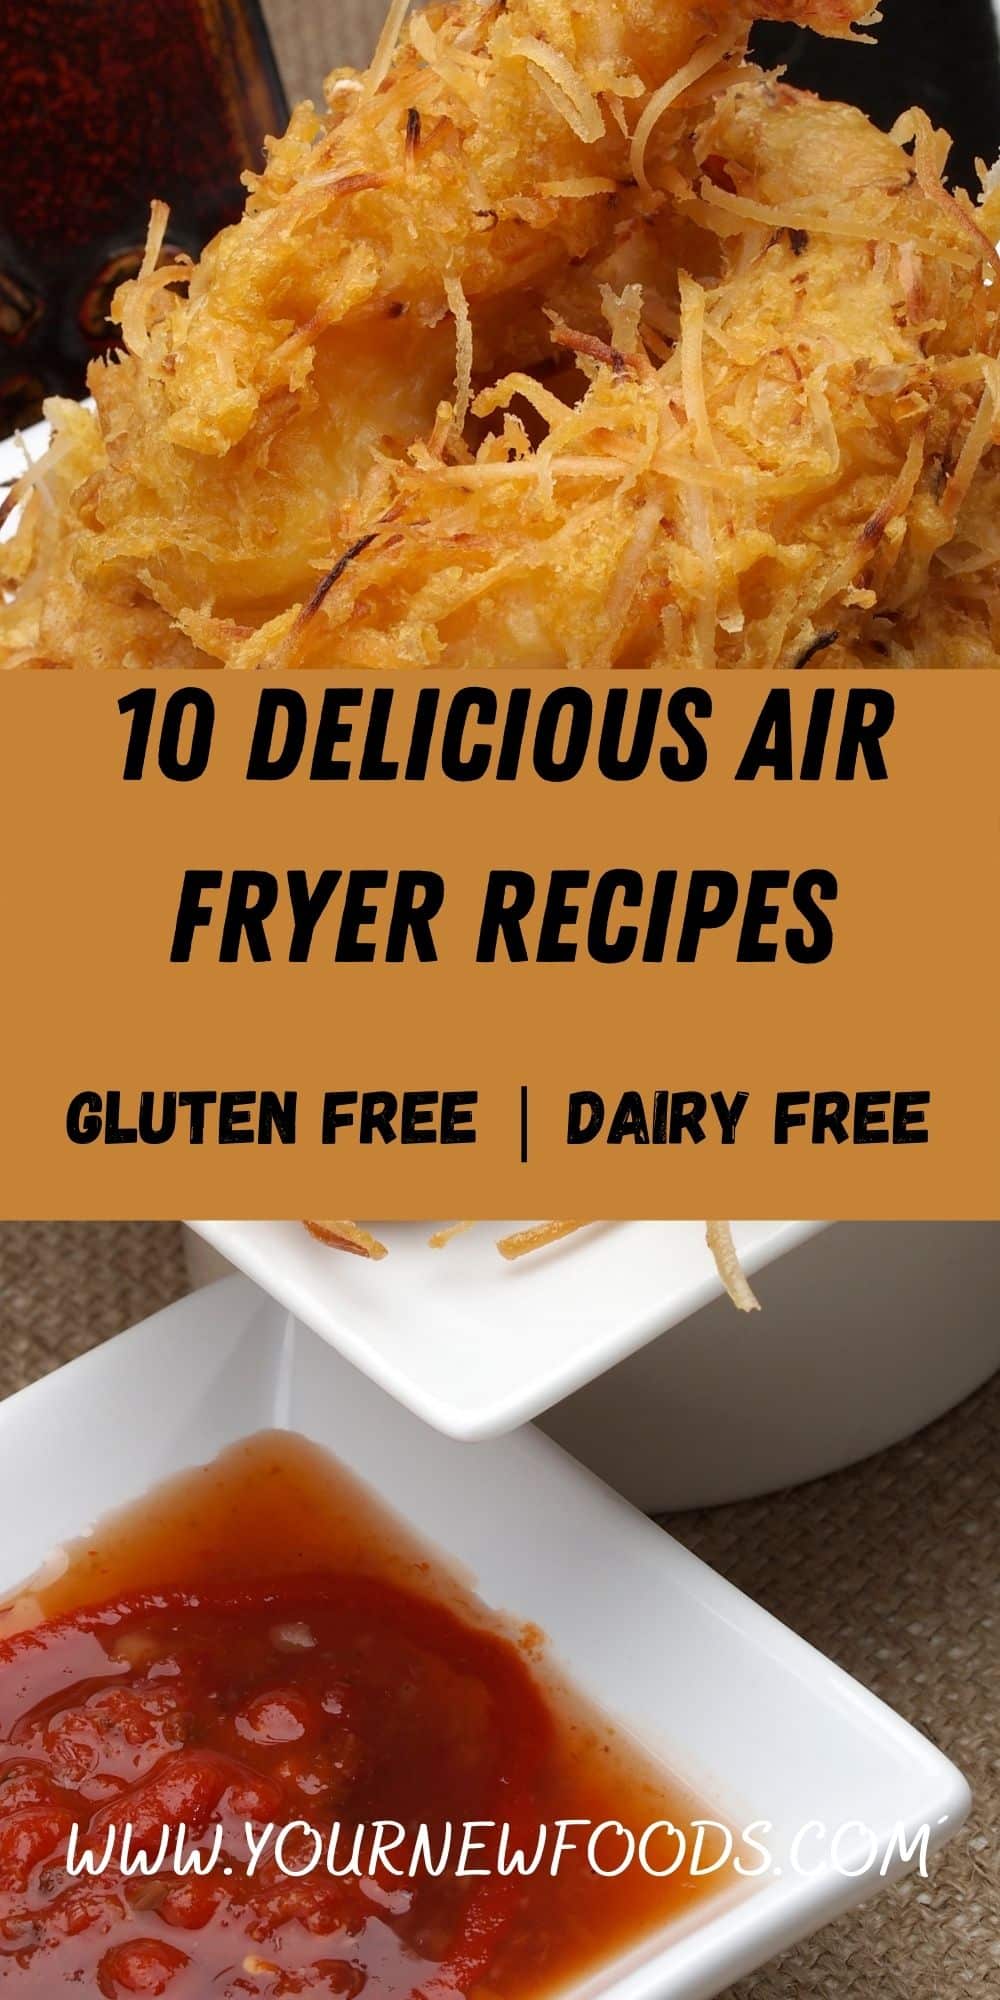 Air-fryer gluten-free dairy-free